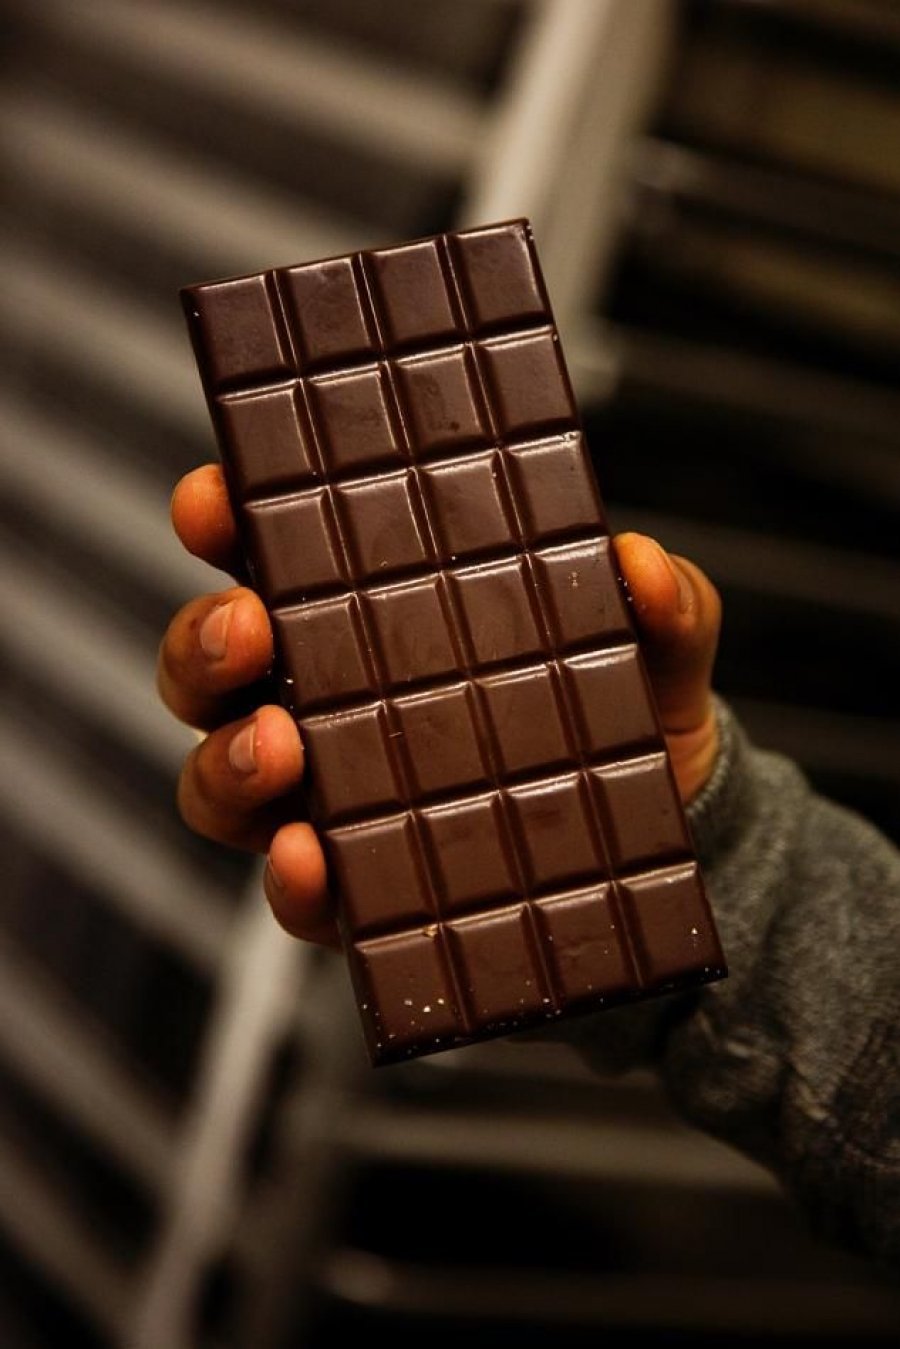 Видео с шоколадкой. Шоколадка. Плитка шоколада. Плиточные шоколадки. Плиточка шоколада.